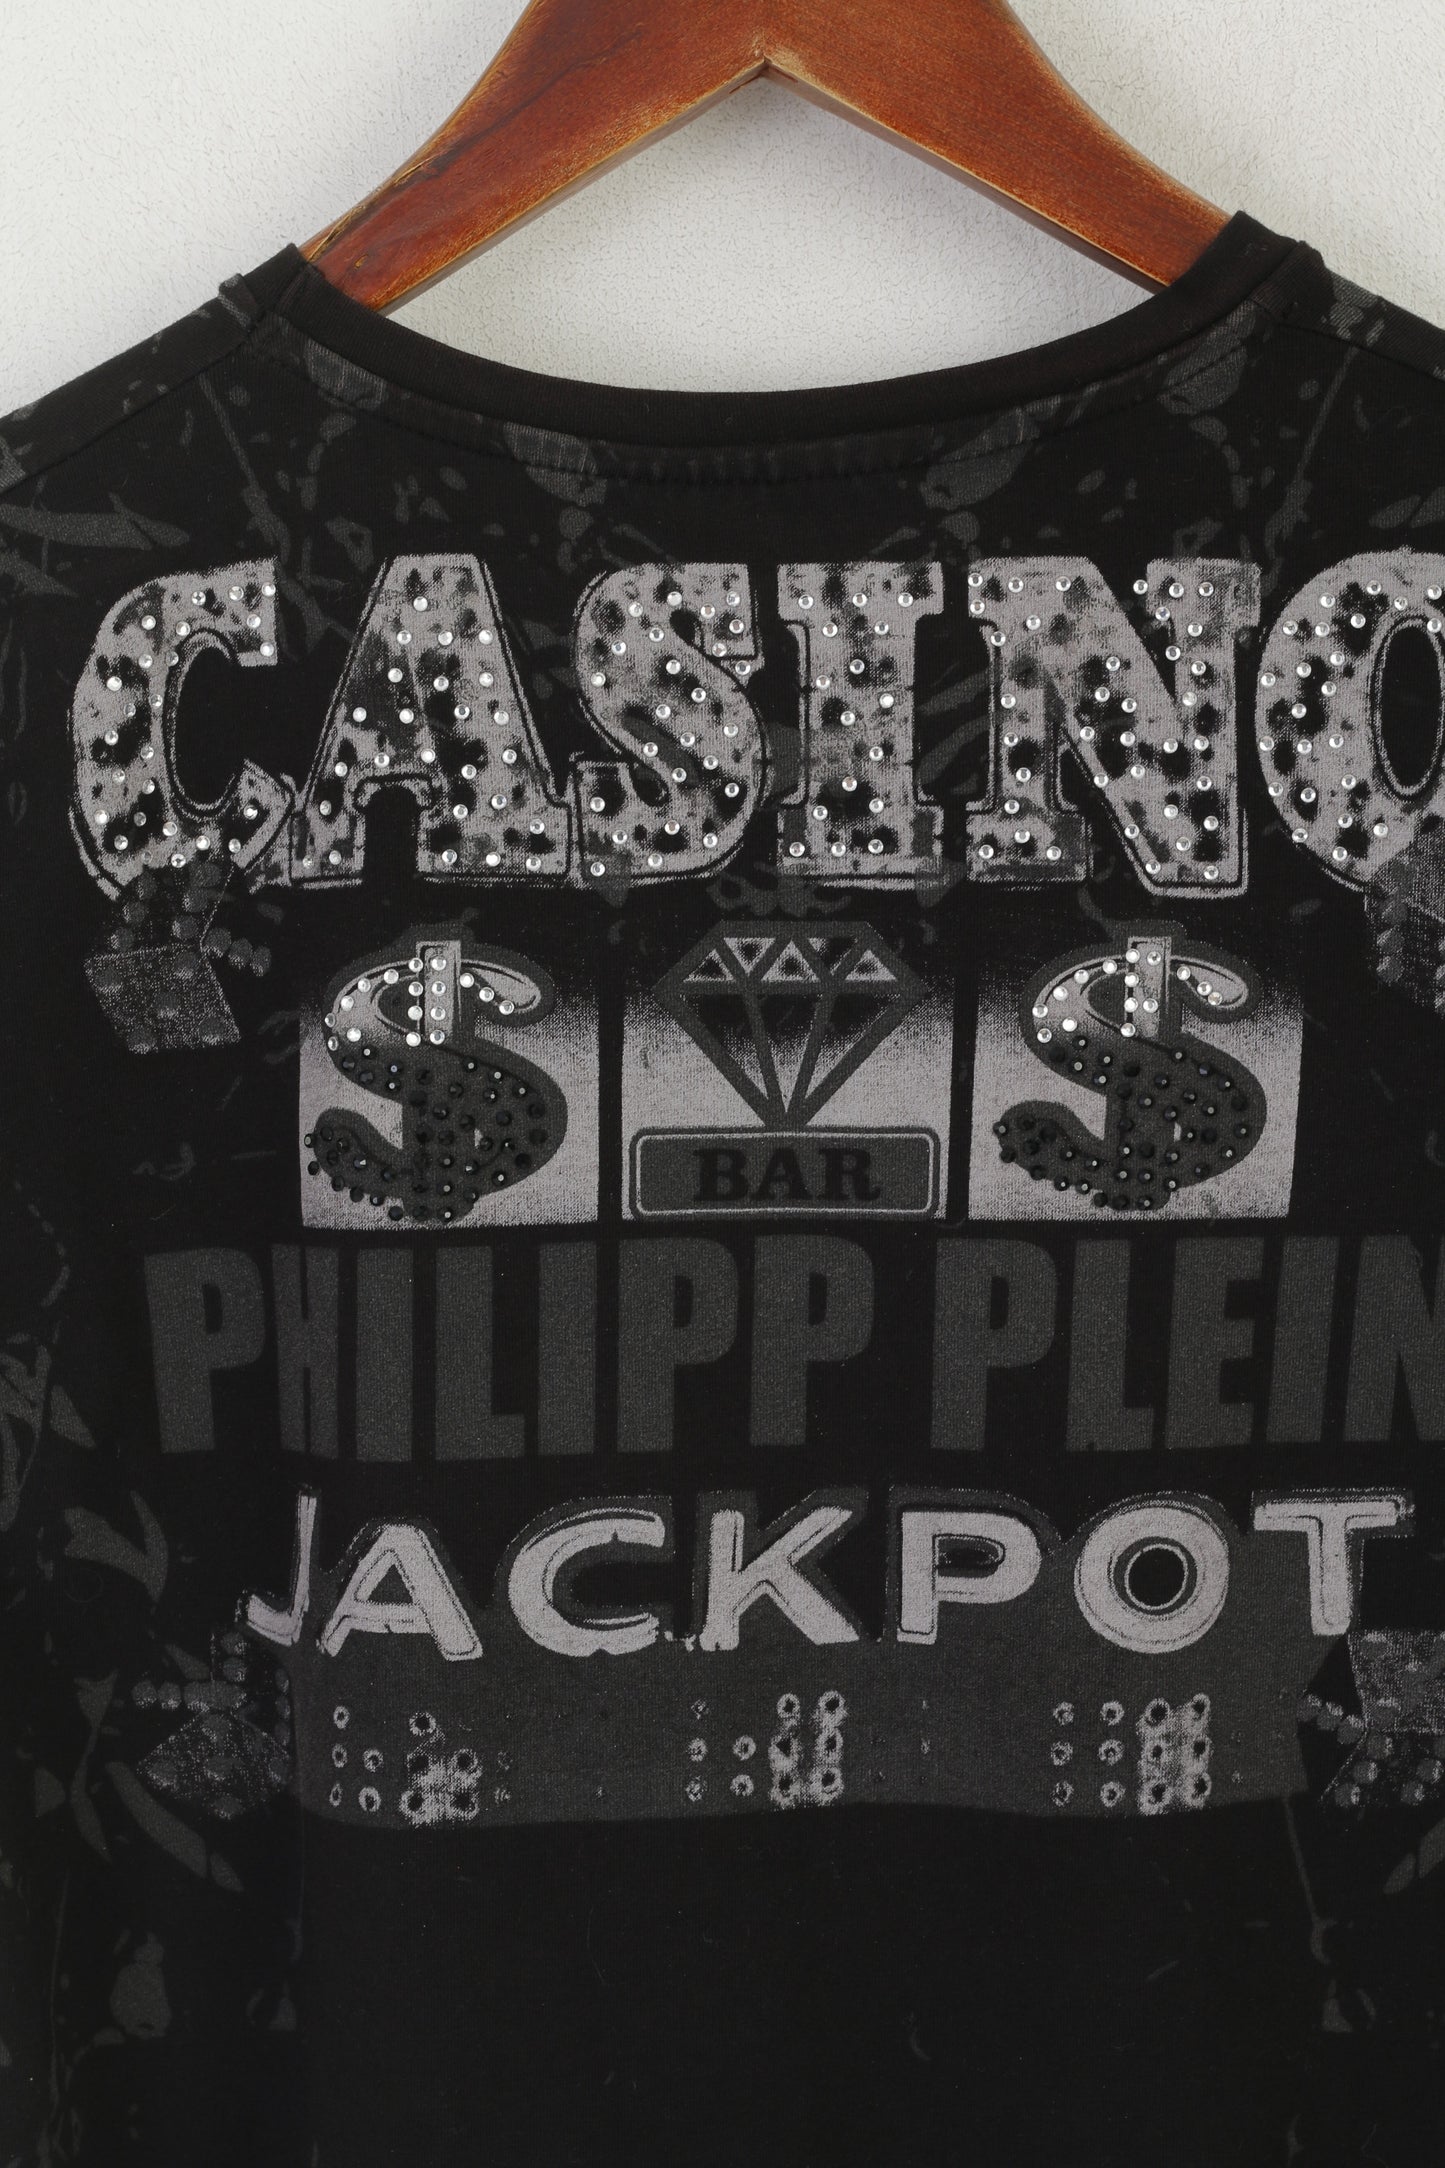 Philipp Plein Homme Camicia da donna S in cotone nero Jackpot Casino Top lucido